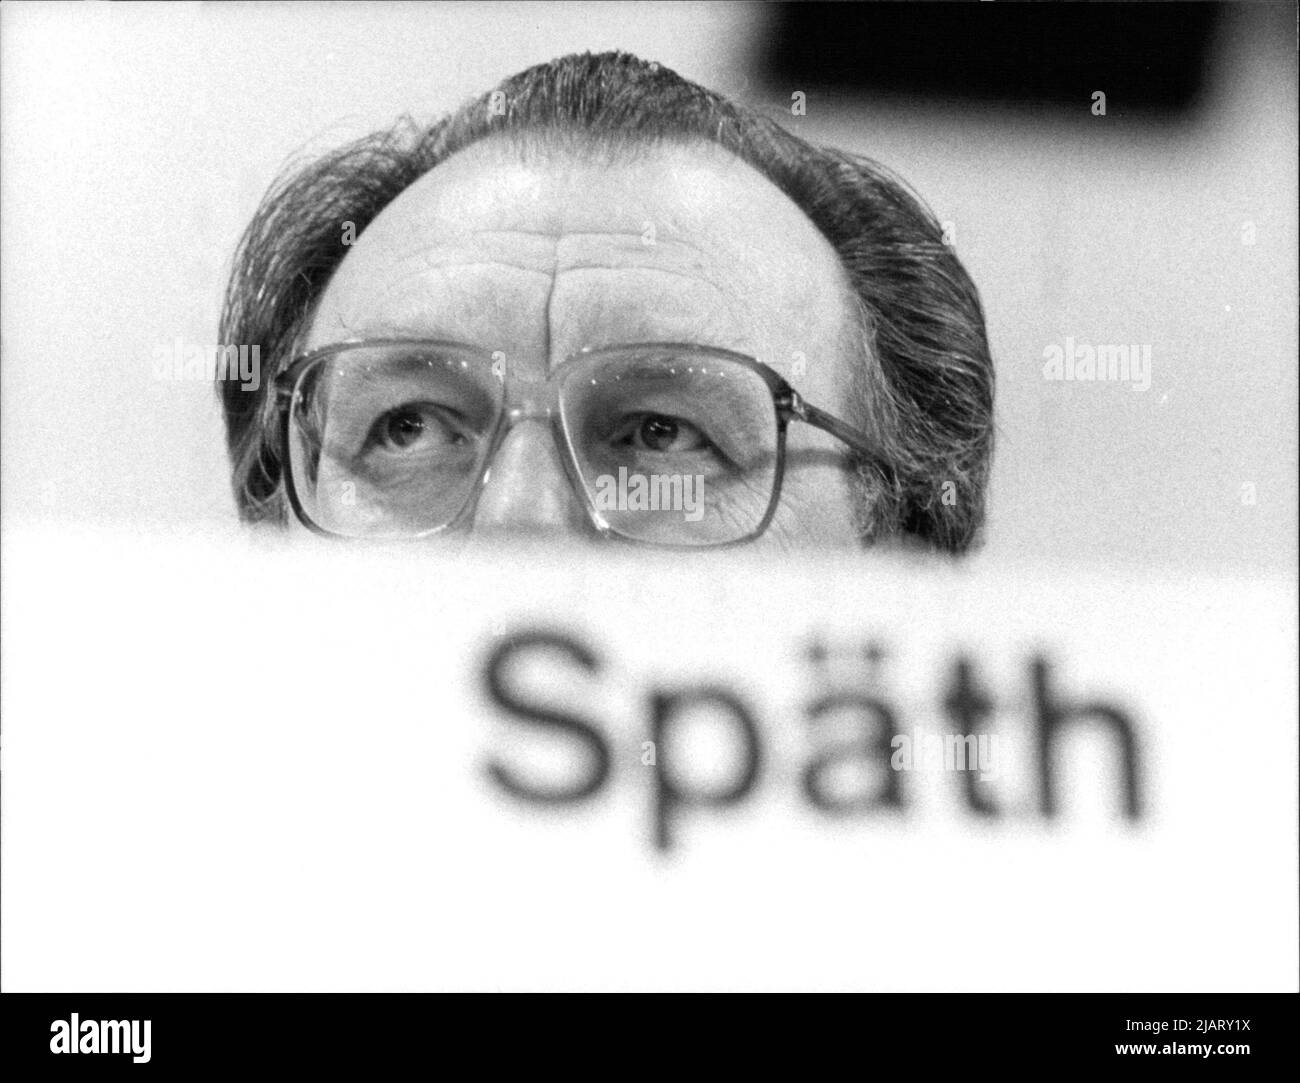 Lothar Späth (16. November 1937 – 18. März 2016) war ein deutscher Politiker (CDU) und Manager. Von 1978 bis 1991 war er Ministerpräsident von Baden-Württemberg. Stock Photo